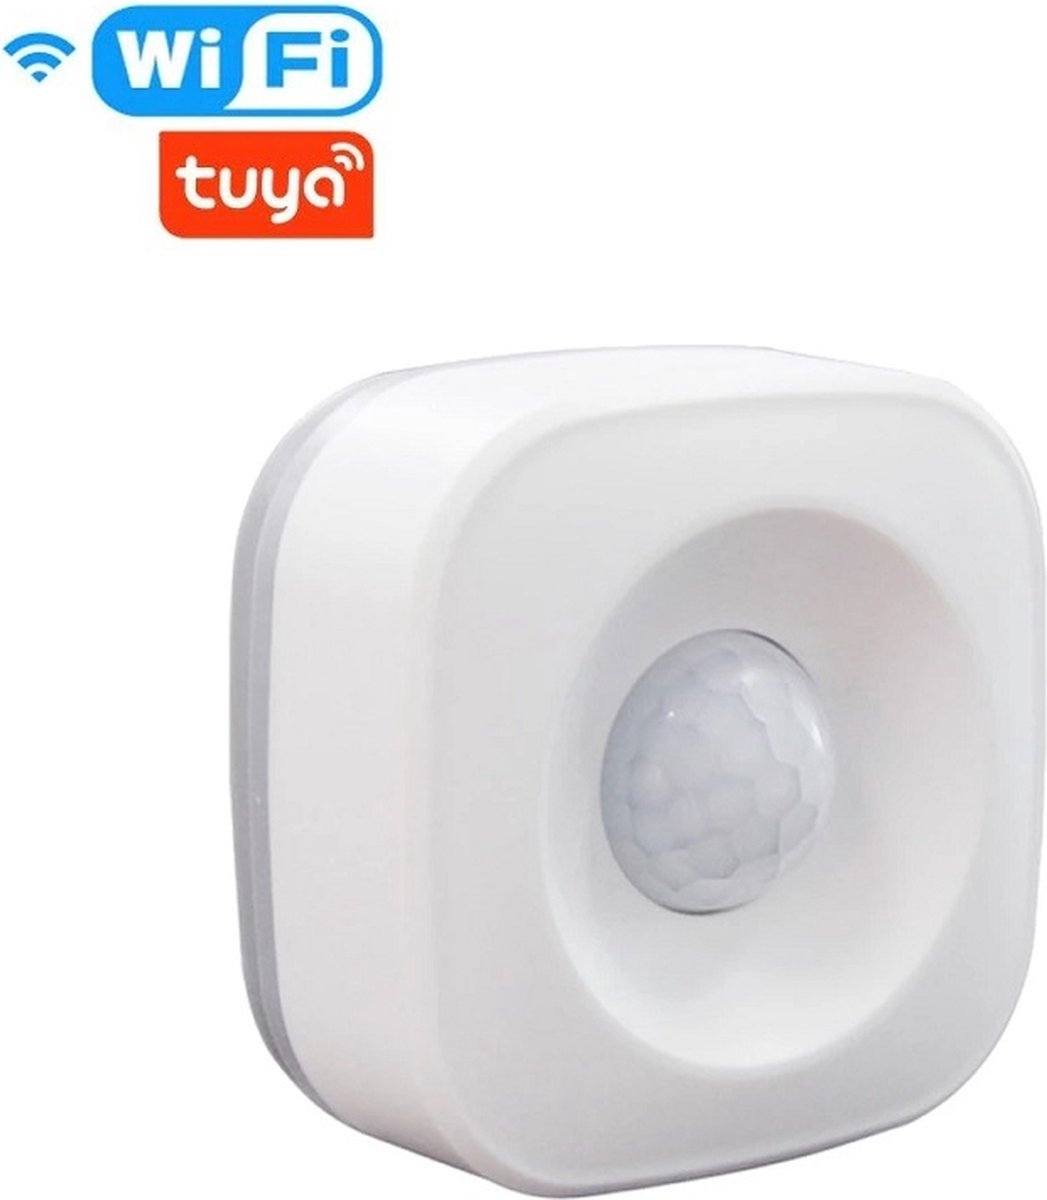 MOES Tuya WiFi Motion Sensor - Tuya Sensoren - Slimme bewegingsensor - Slimme sensor - Smart Life